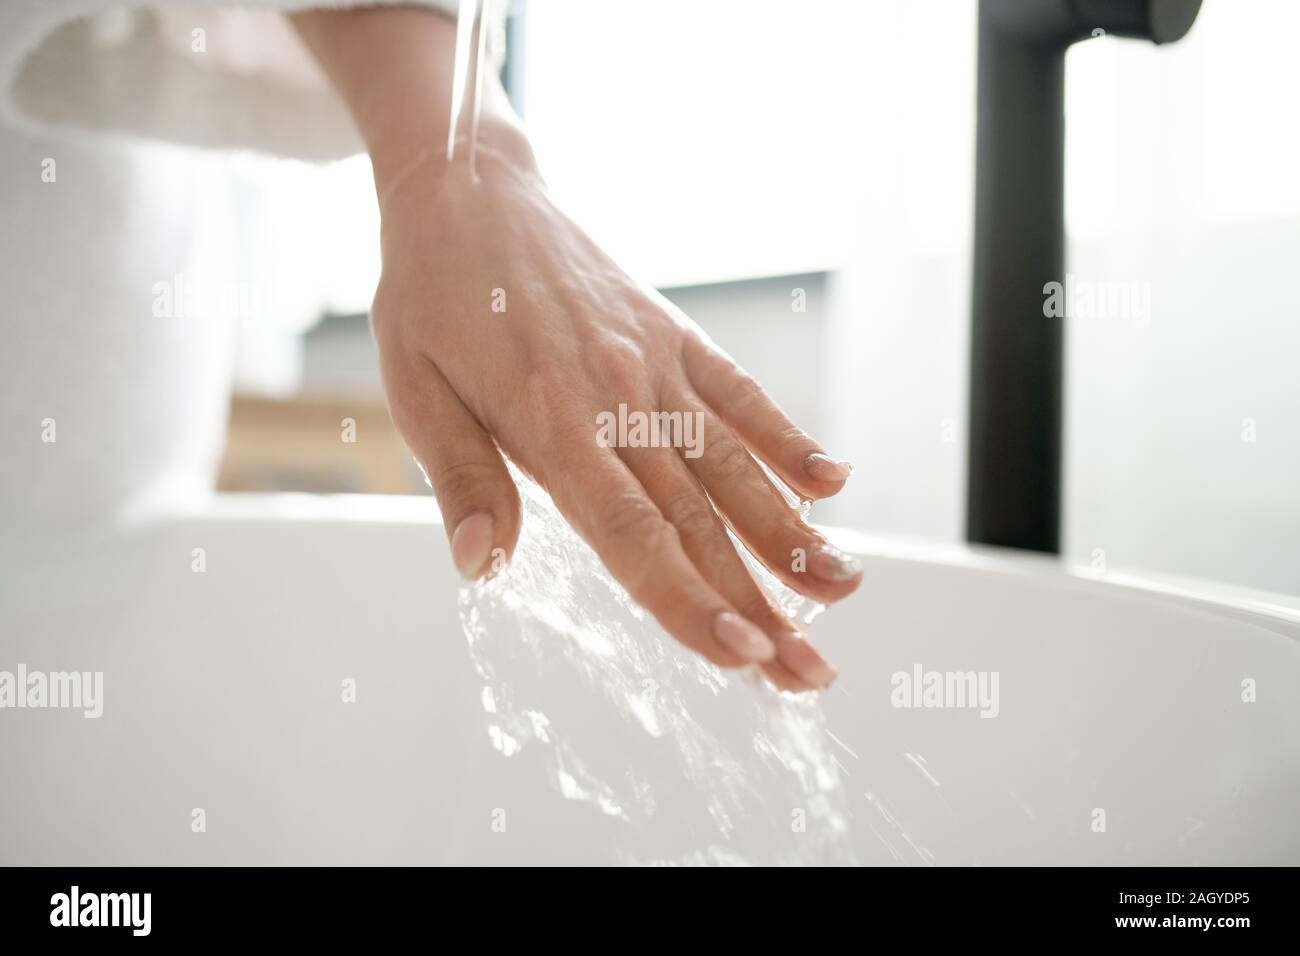 Main de jeune femme sous l'eau chaude pure découlant de puiser dans une baignoire Banque D'Images